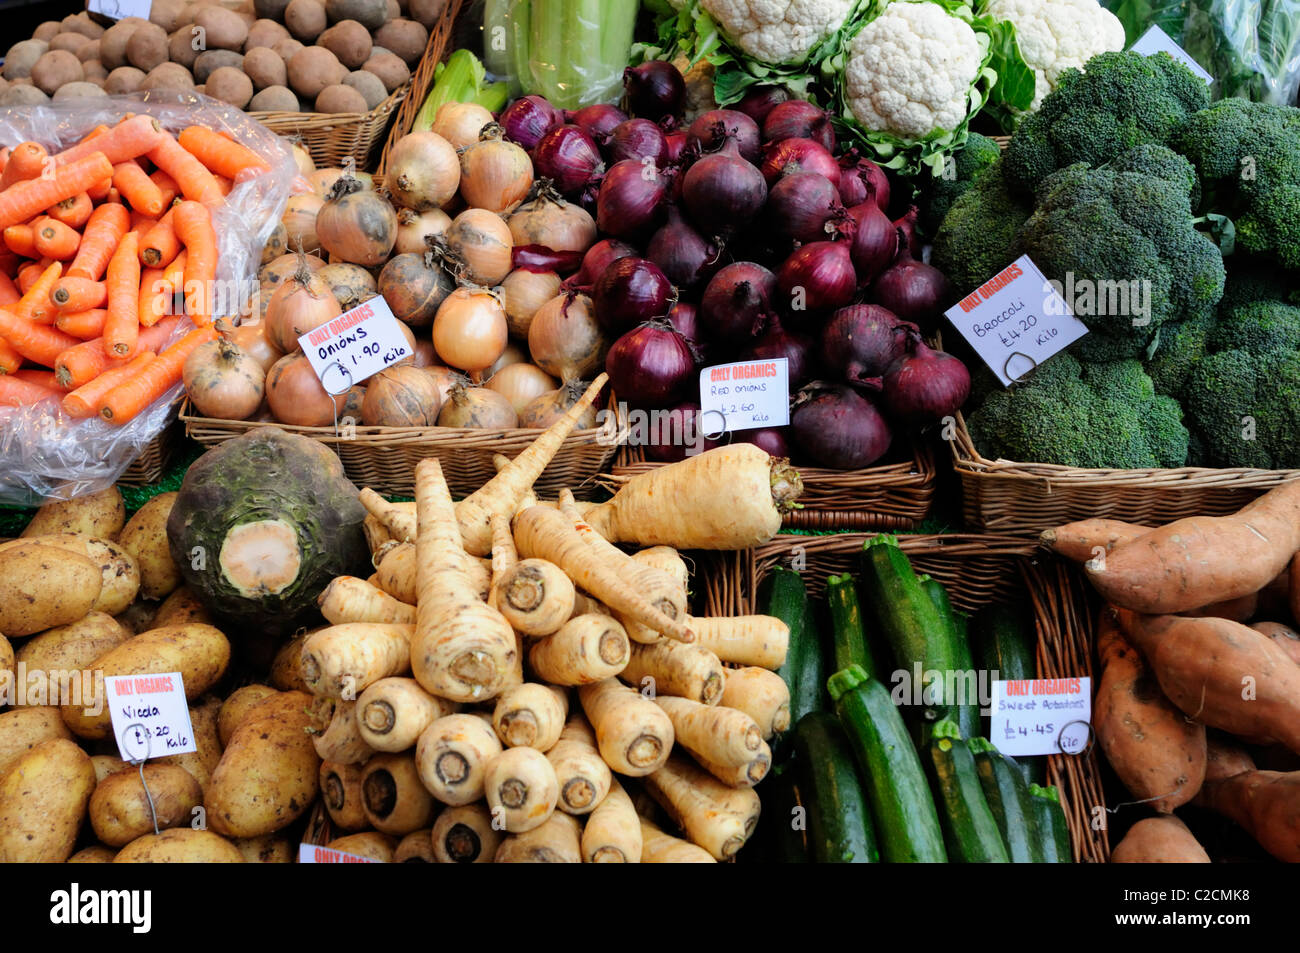 Kiosque de légumes biologiques à Borough Market, Southwark, London, England, UK Banque D'Images